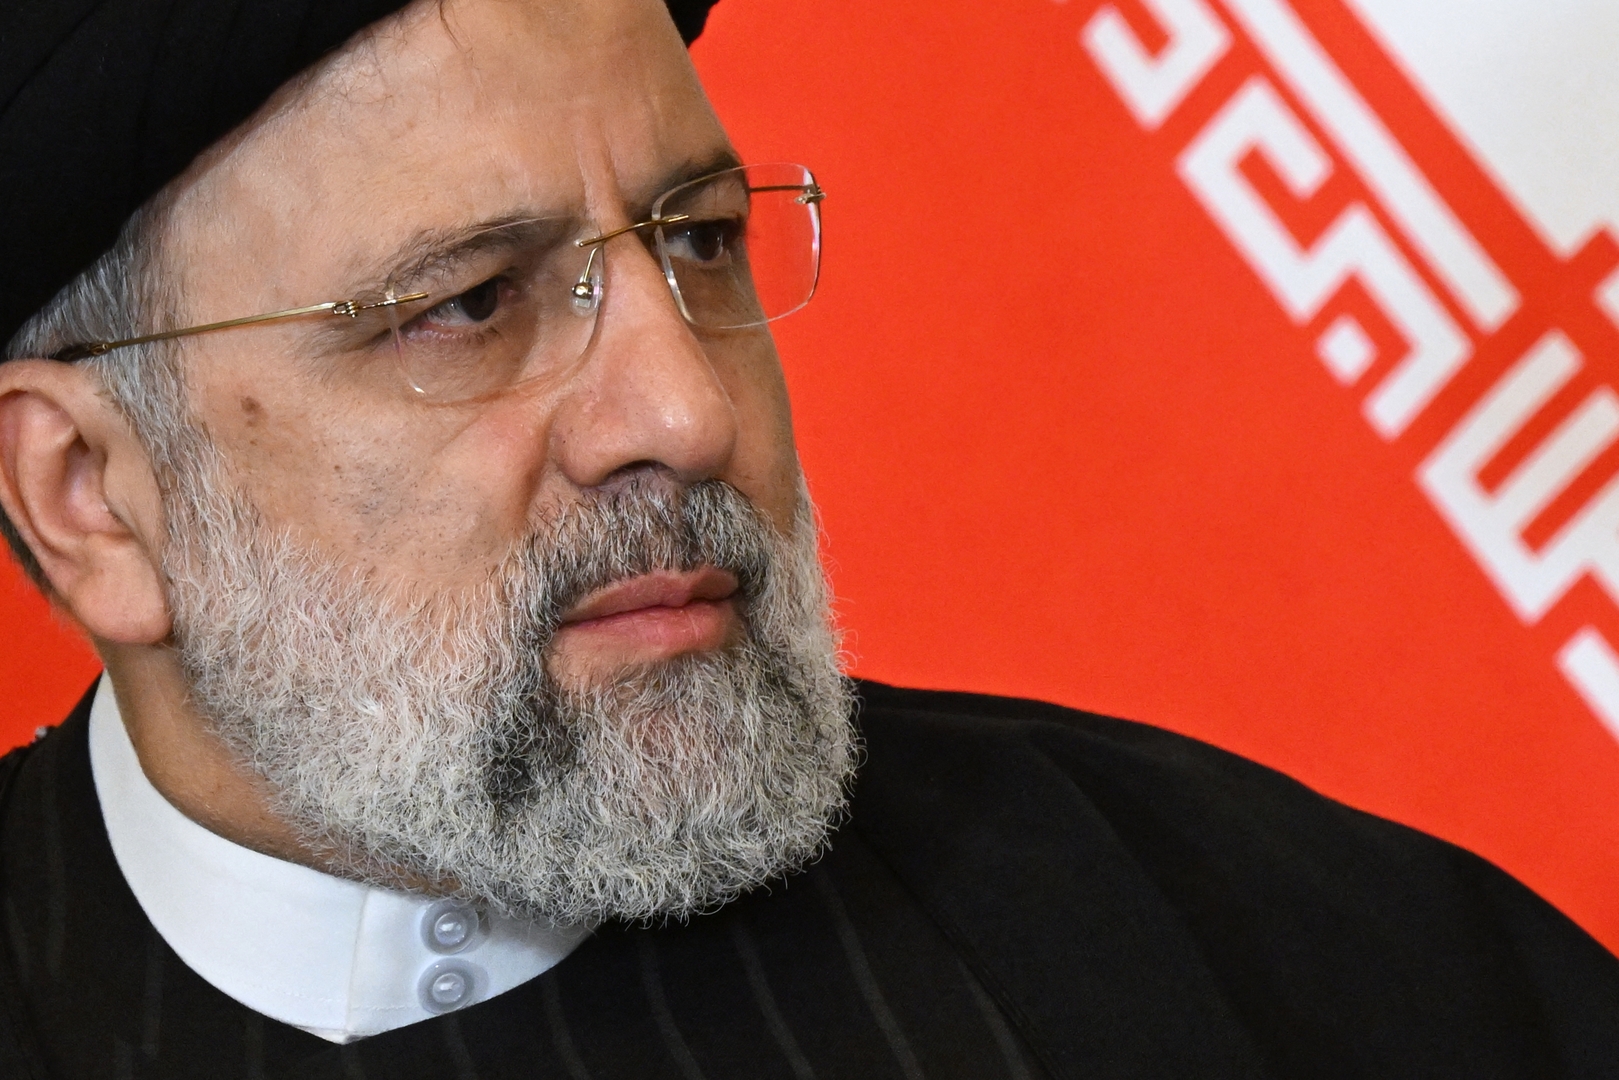 لقاء داخل طائرة بين الرئيس الإيراني ومستشار الحرس الثوري موسوي قبل اغتياله بشهور (فيديو)